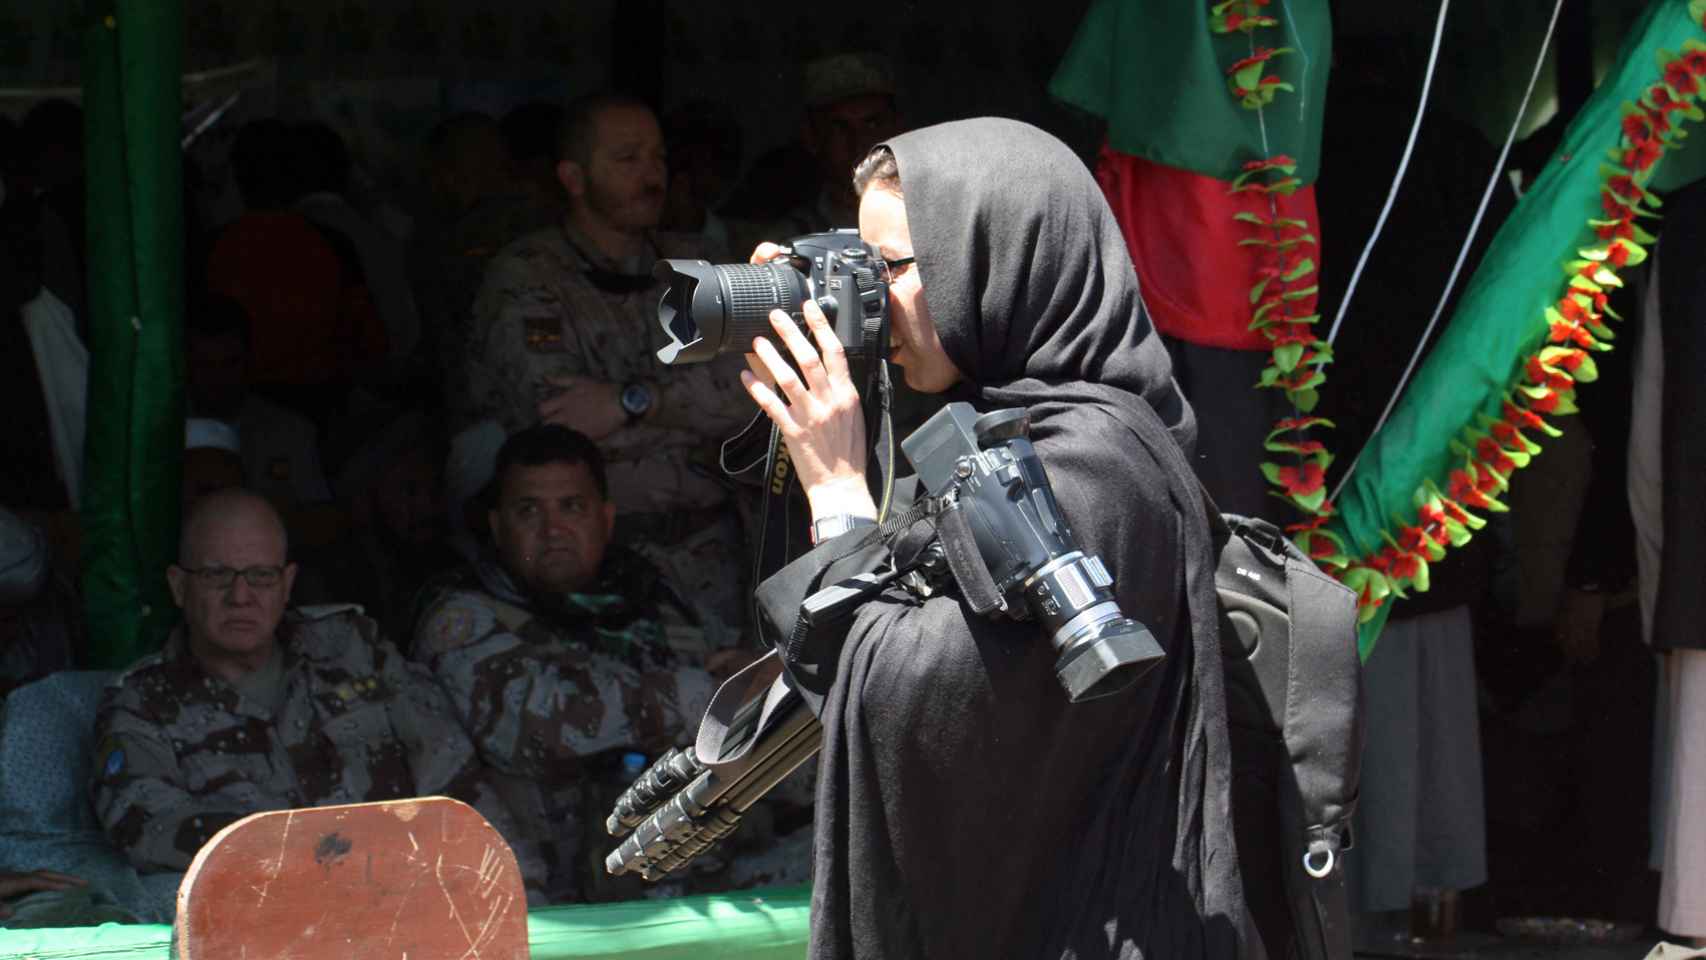 La periodista Mònica Bernabé en Afganistán, vestida con una prenda tradicional femenina